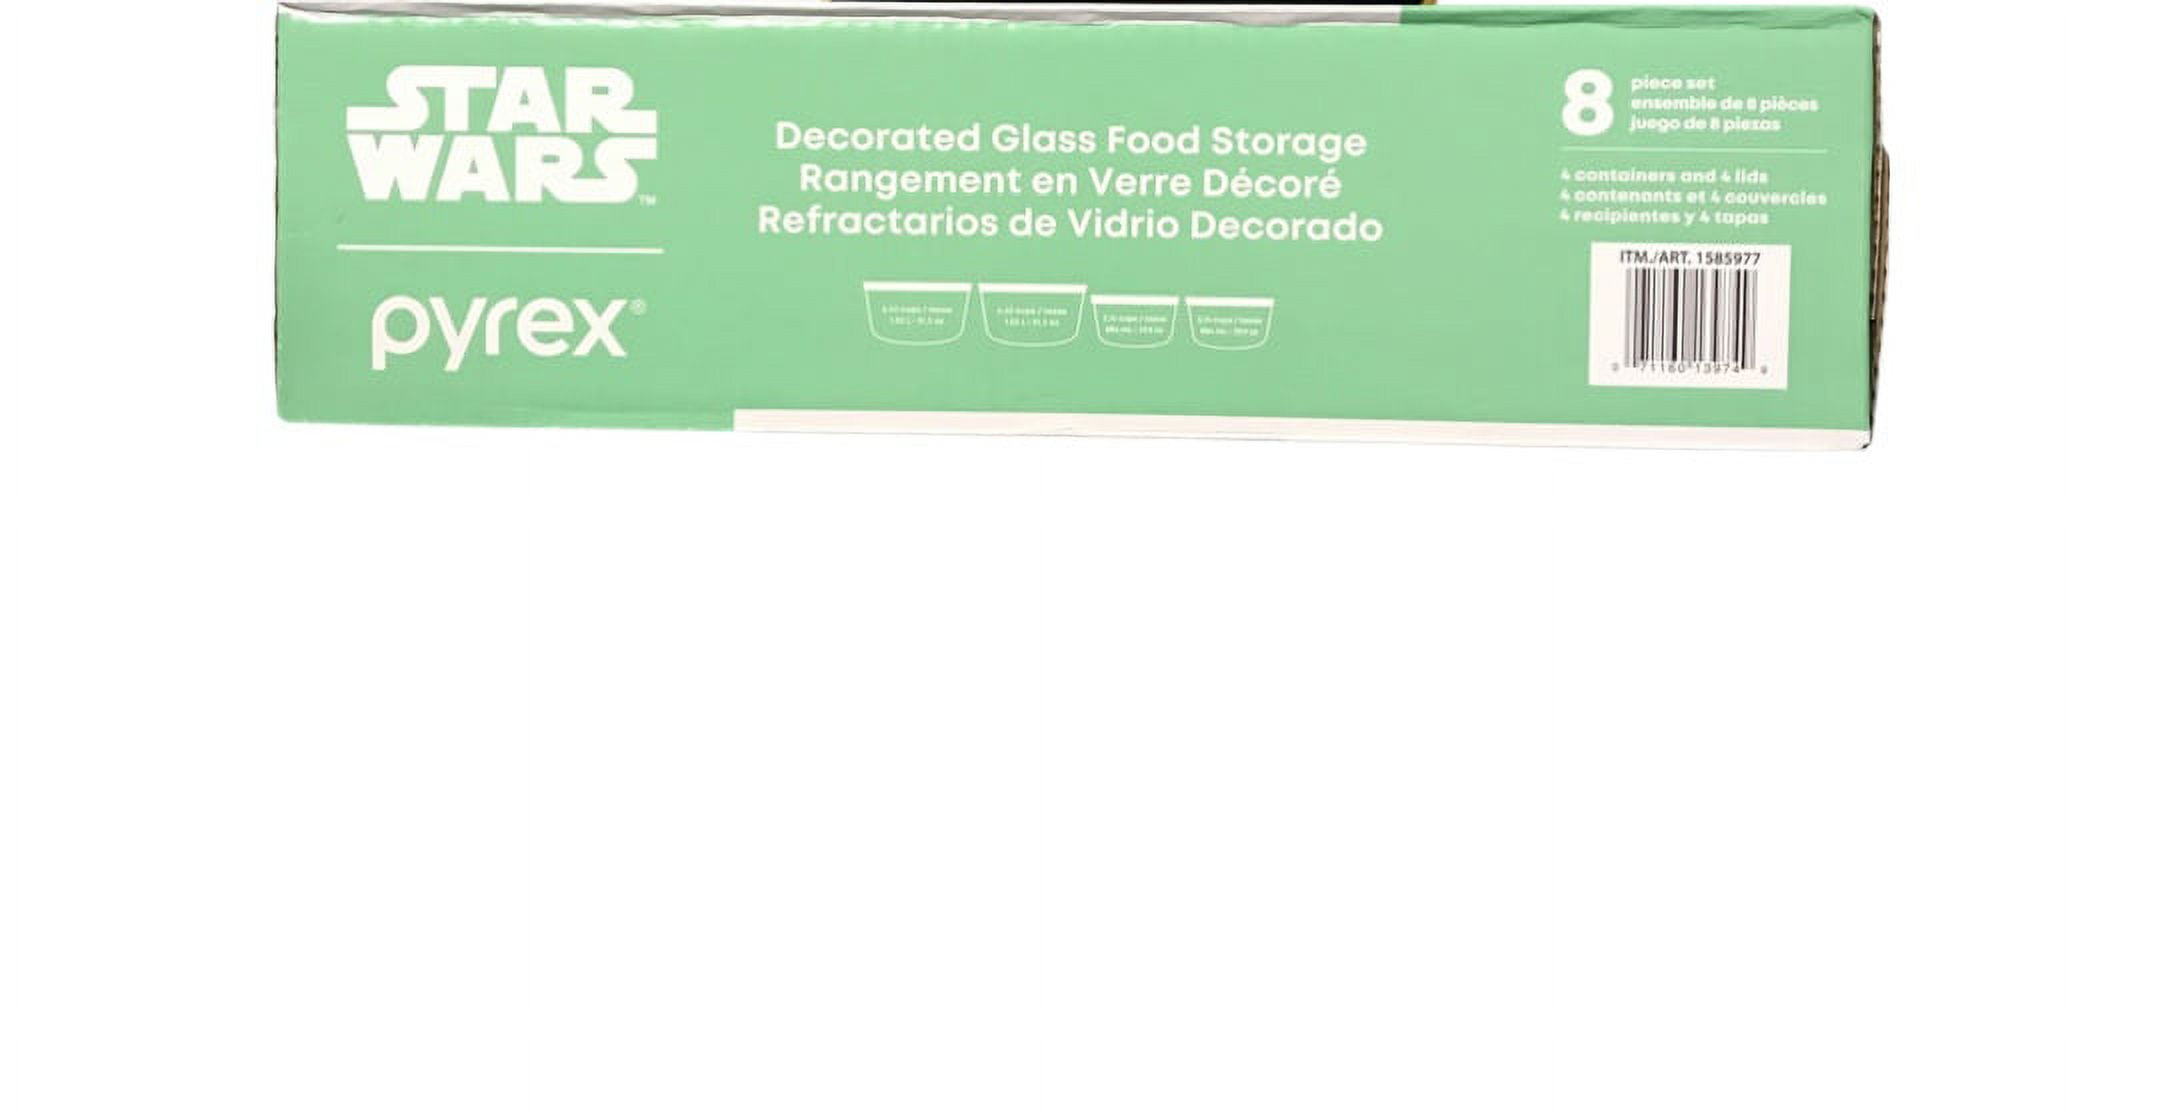 Pyrex Star Wars 10 Piece Decorated Glass Food Storage Set - Dutch Goat